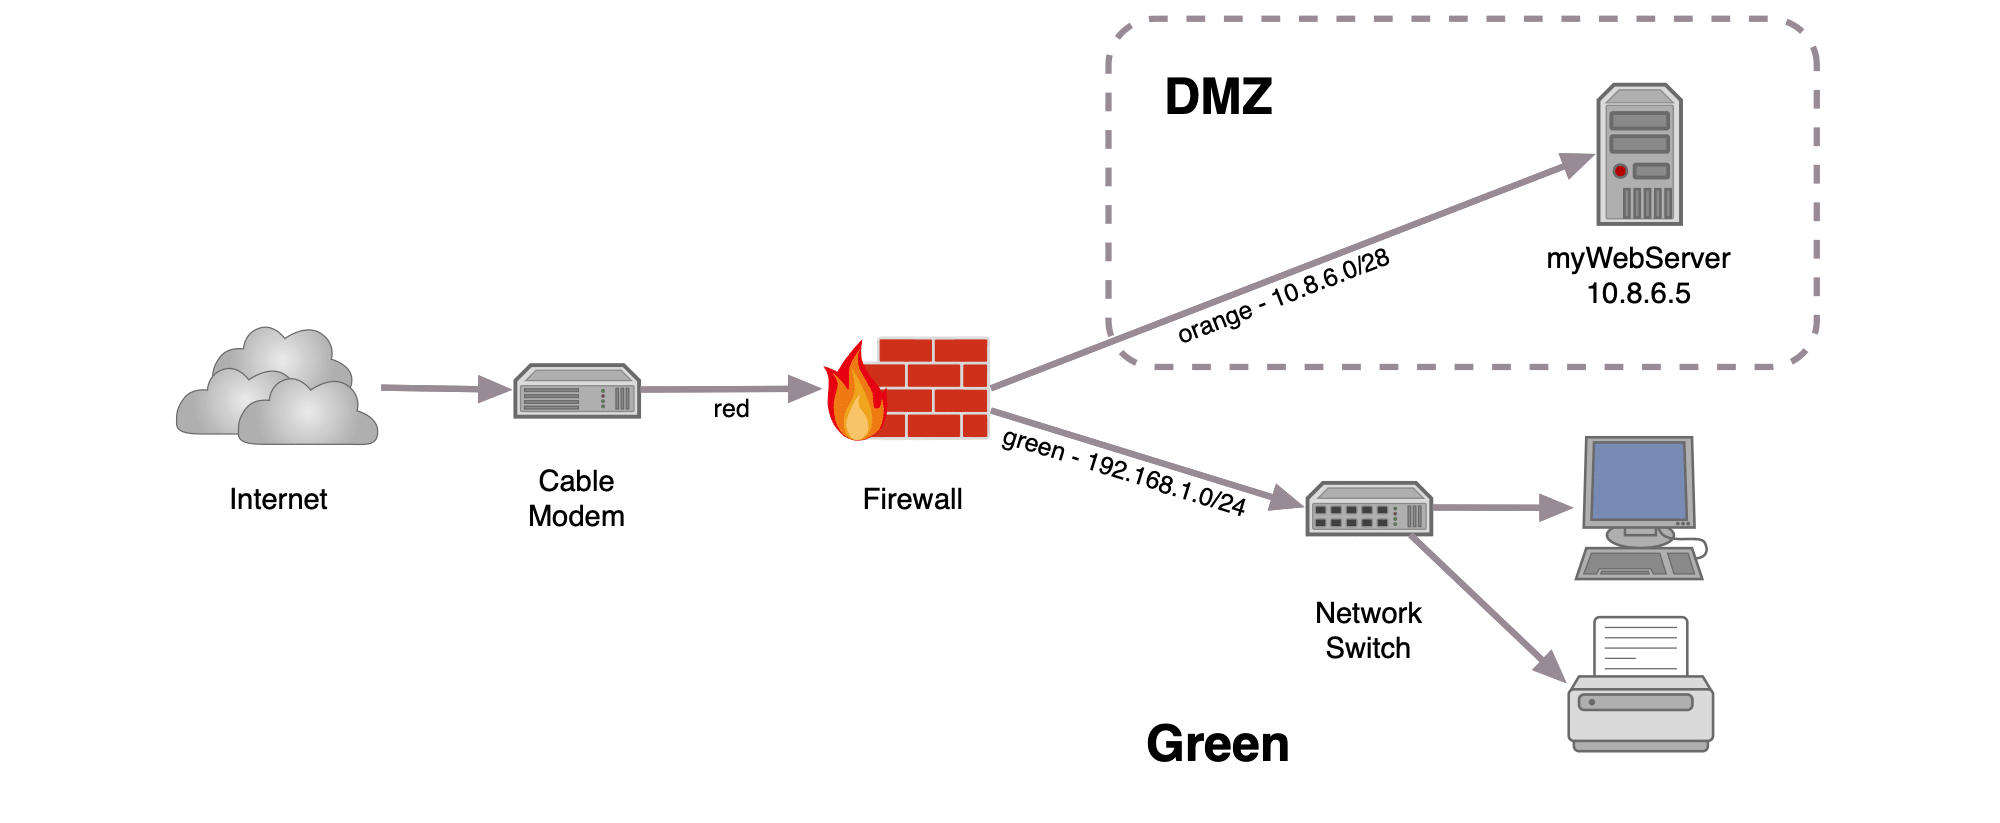 Demilitarized Zone (DMZ)